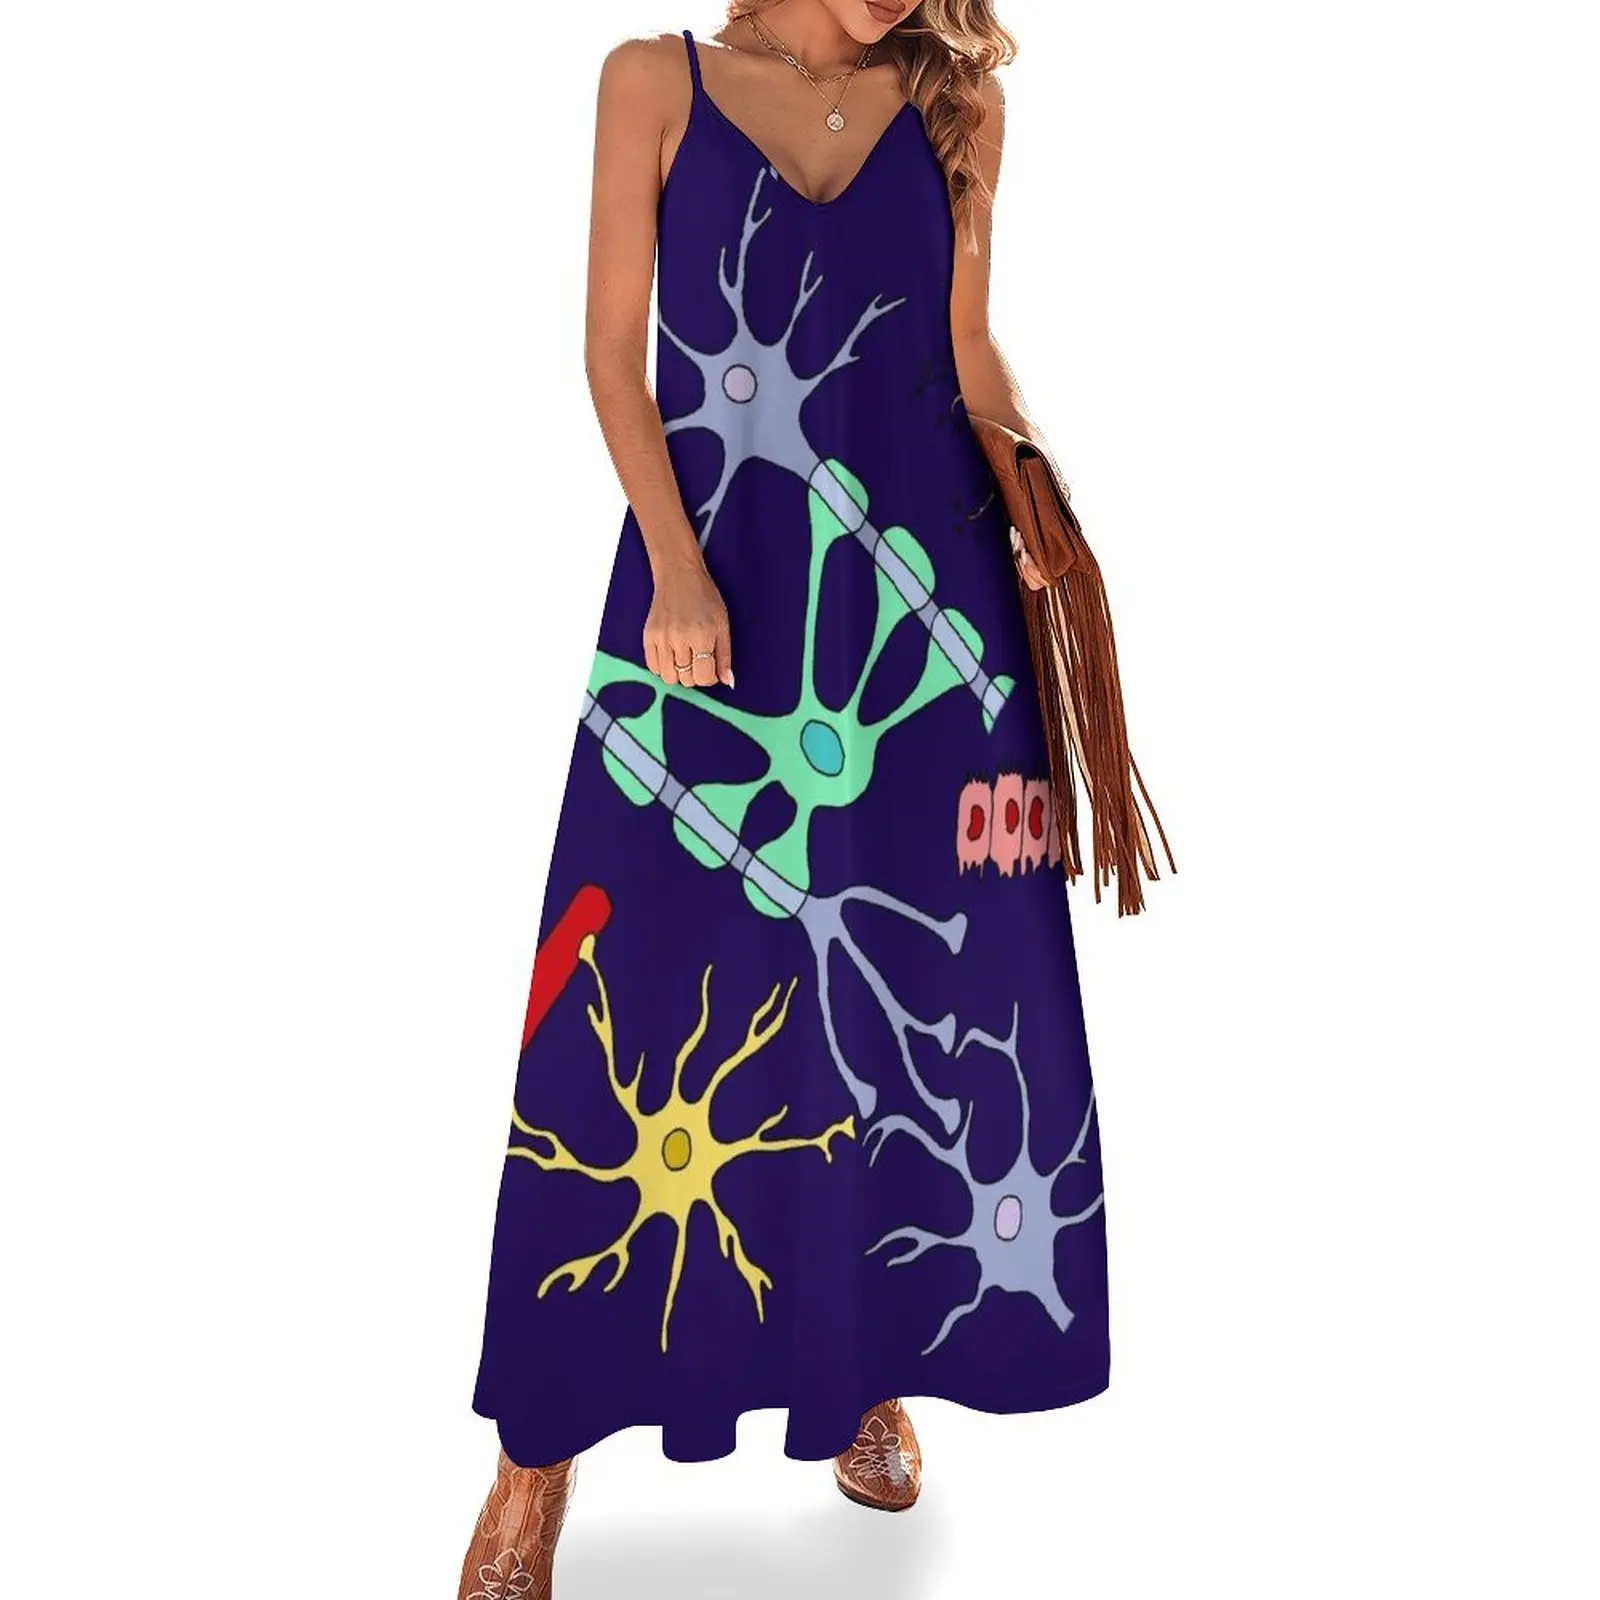 

Платье без рукавов с изображением нейронов и лилии, роскошное чувственное сексуальное платье для женщин, элегантные женские платья, распродажа одежды